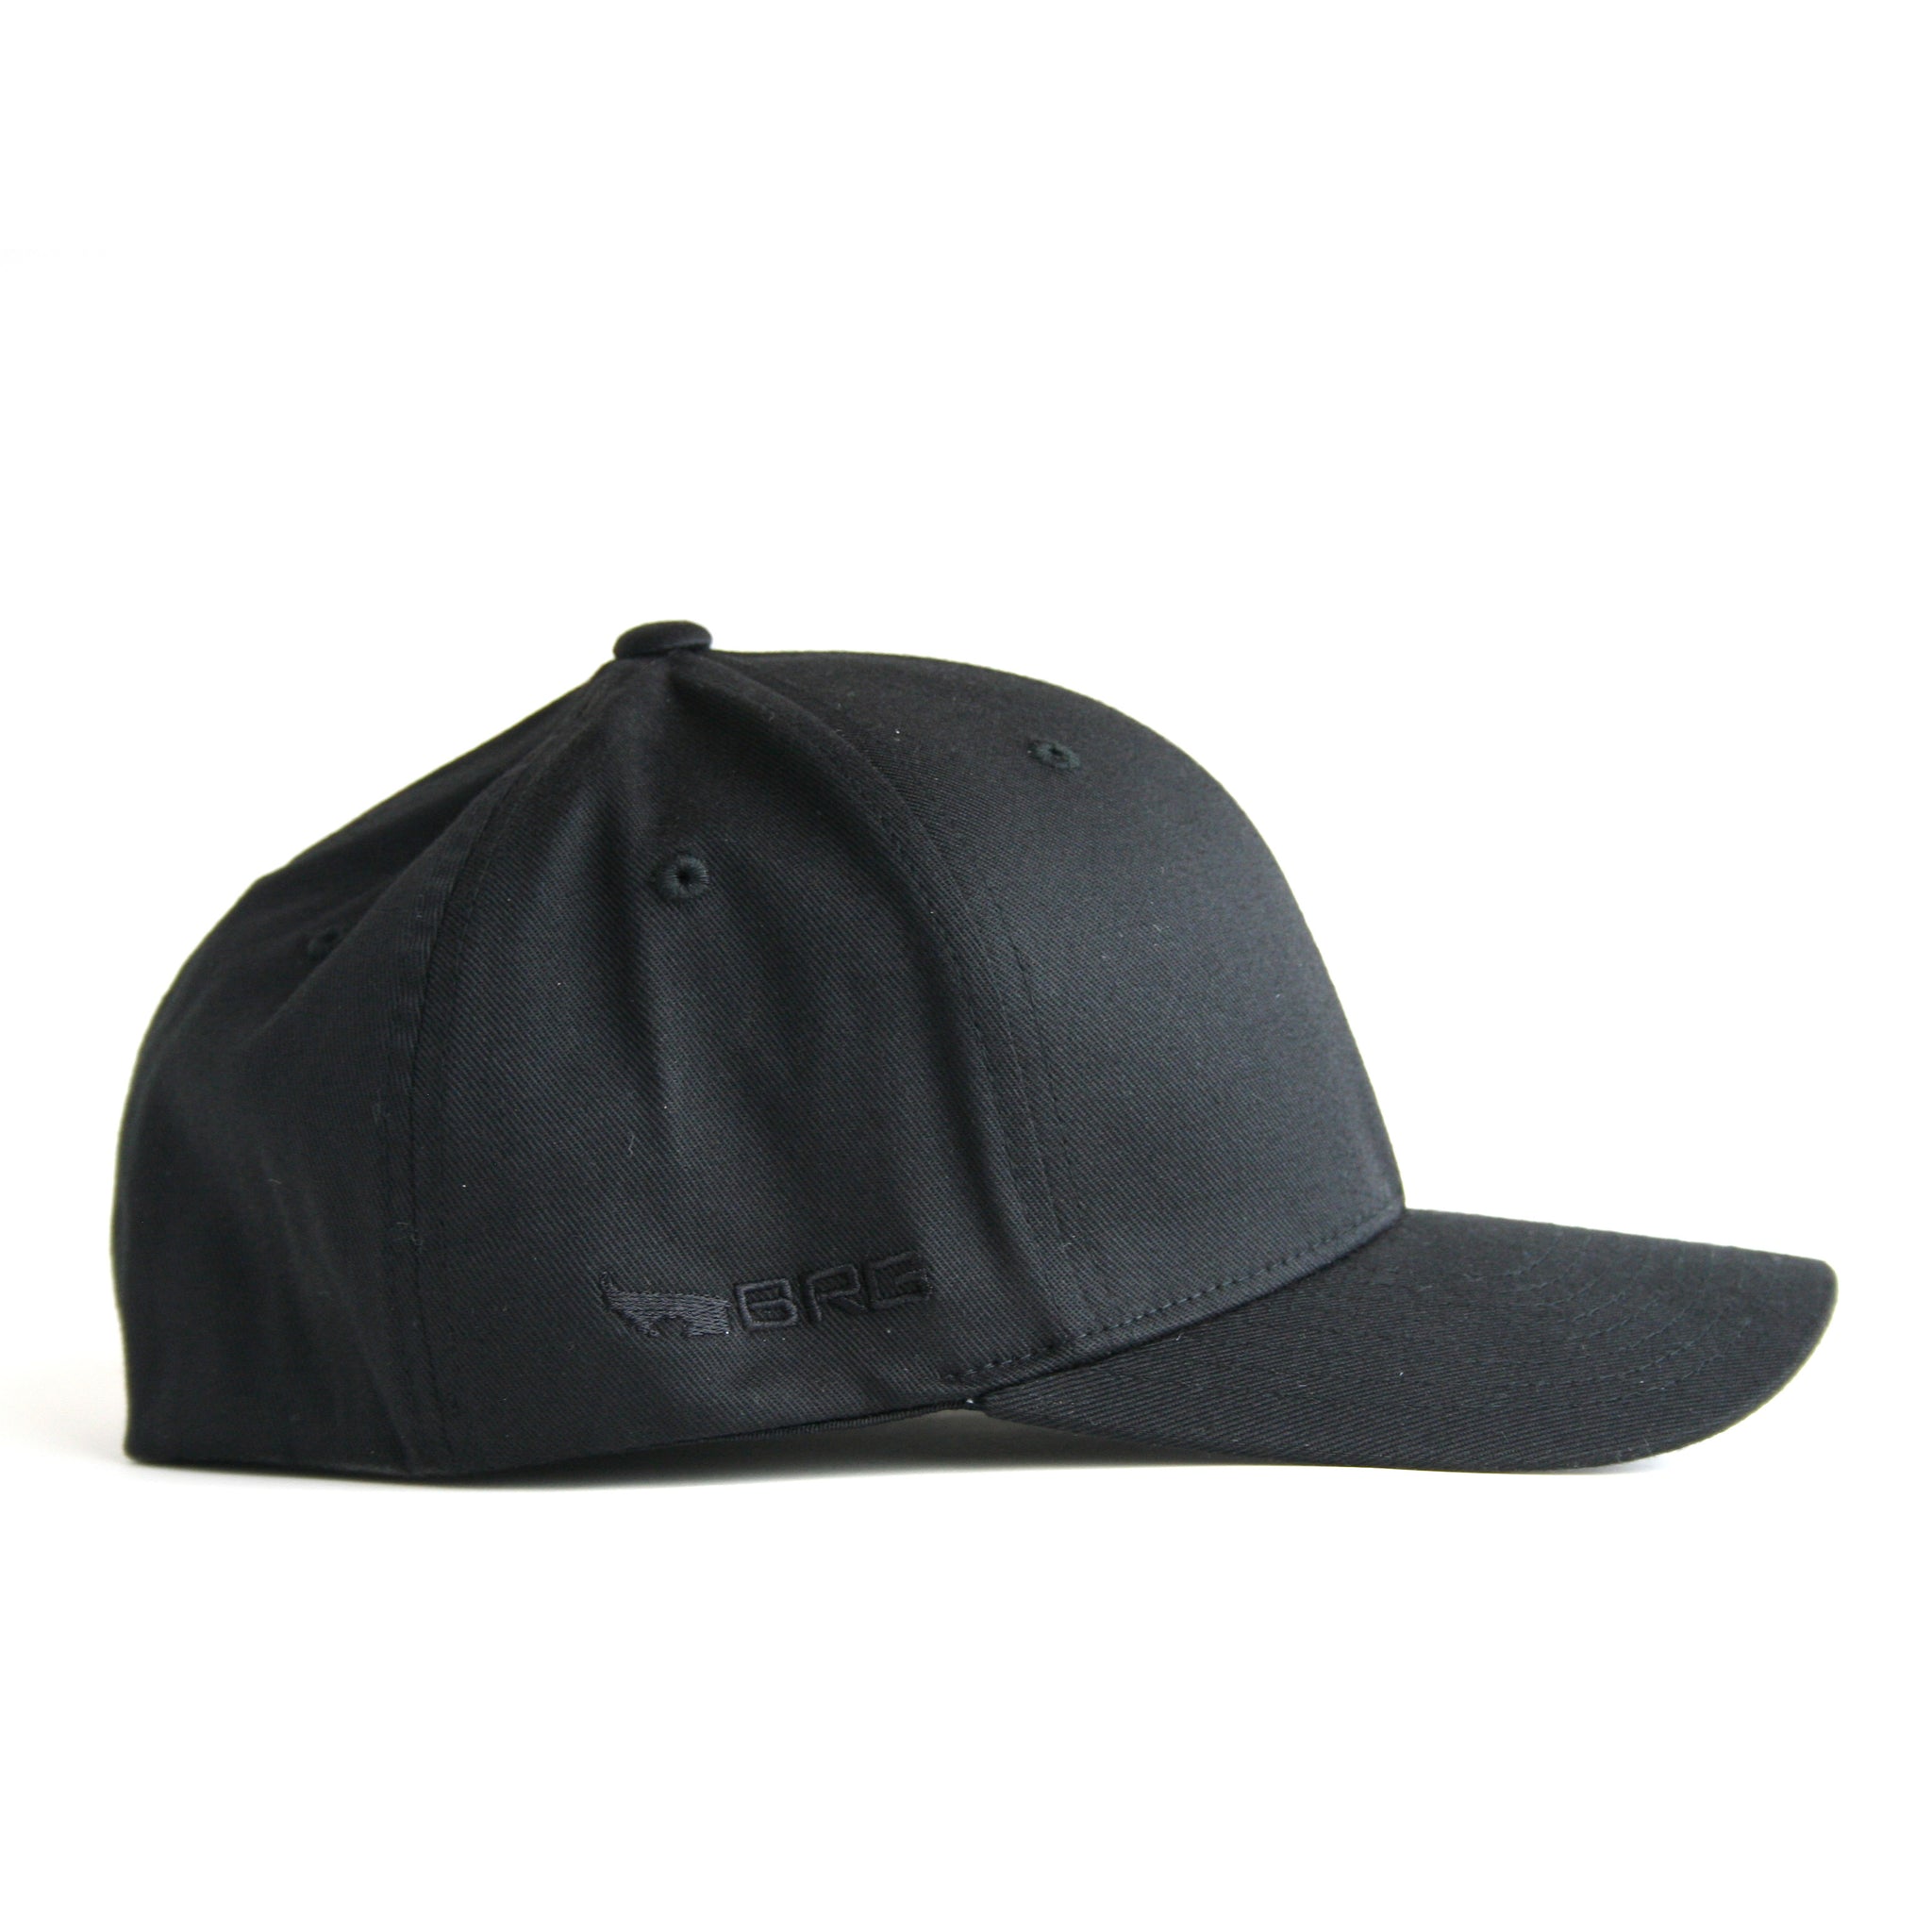 BRG Logo Hat - Black Flexfit